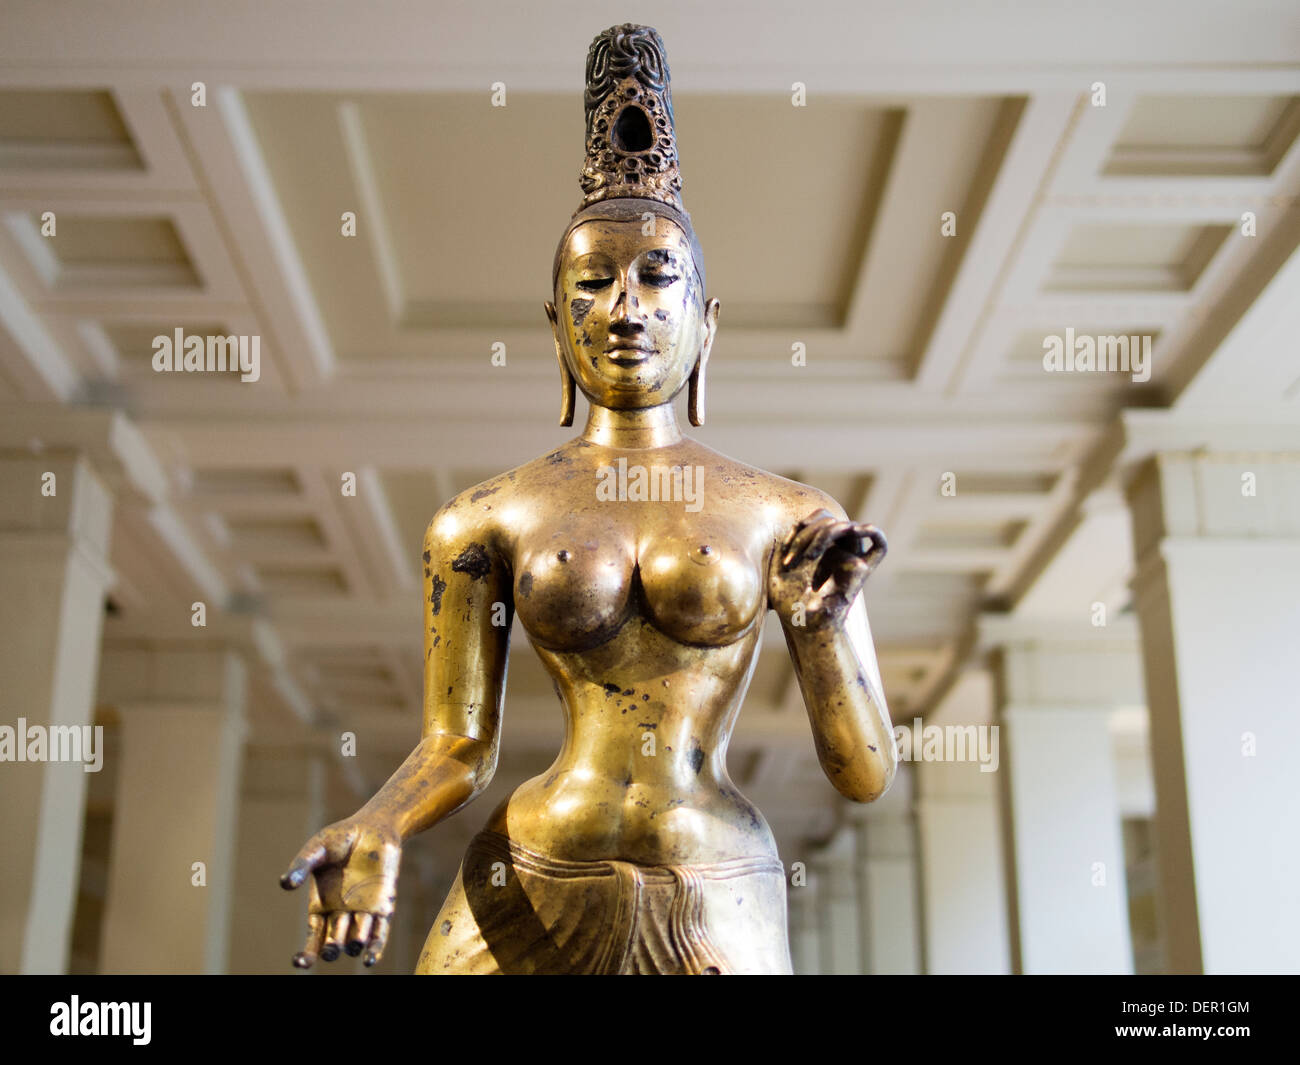 The British Museum, London - gilded bronze Sri Lankan statue of Tara, consort of Avalokitesvara 3 Stock Photo